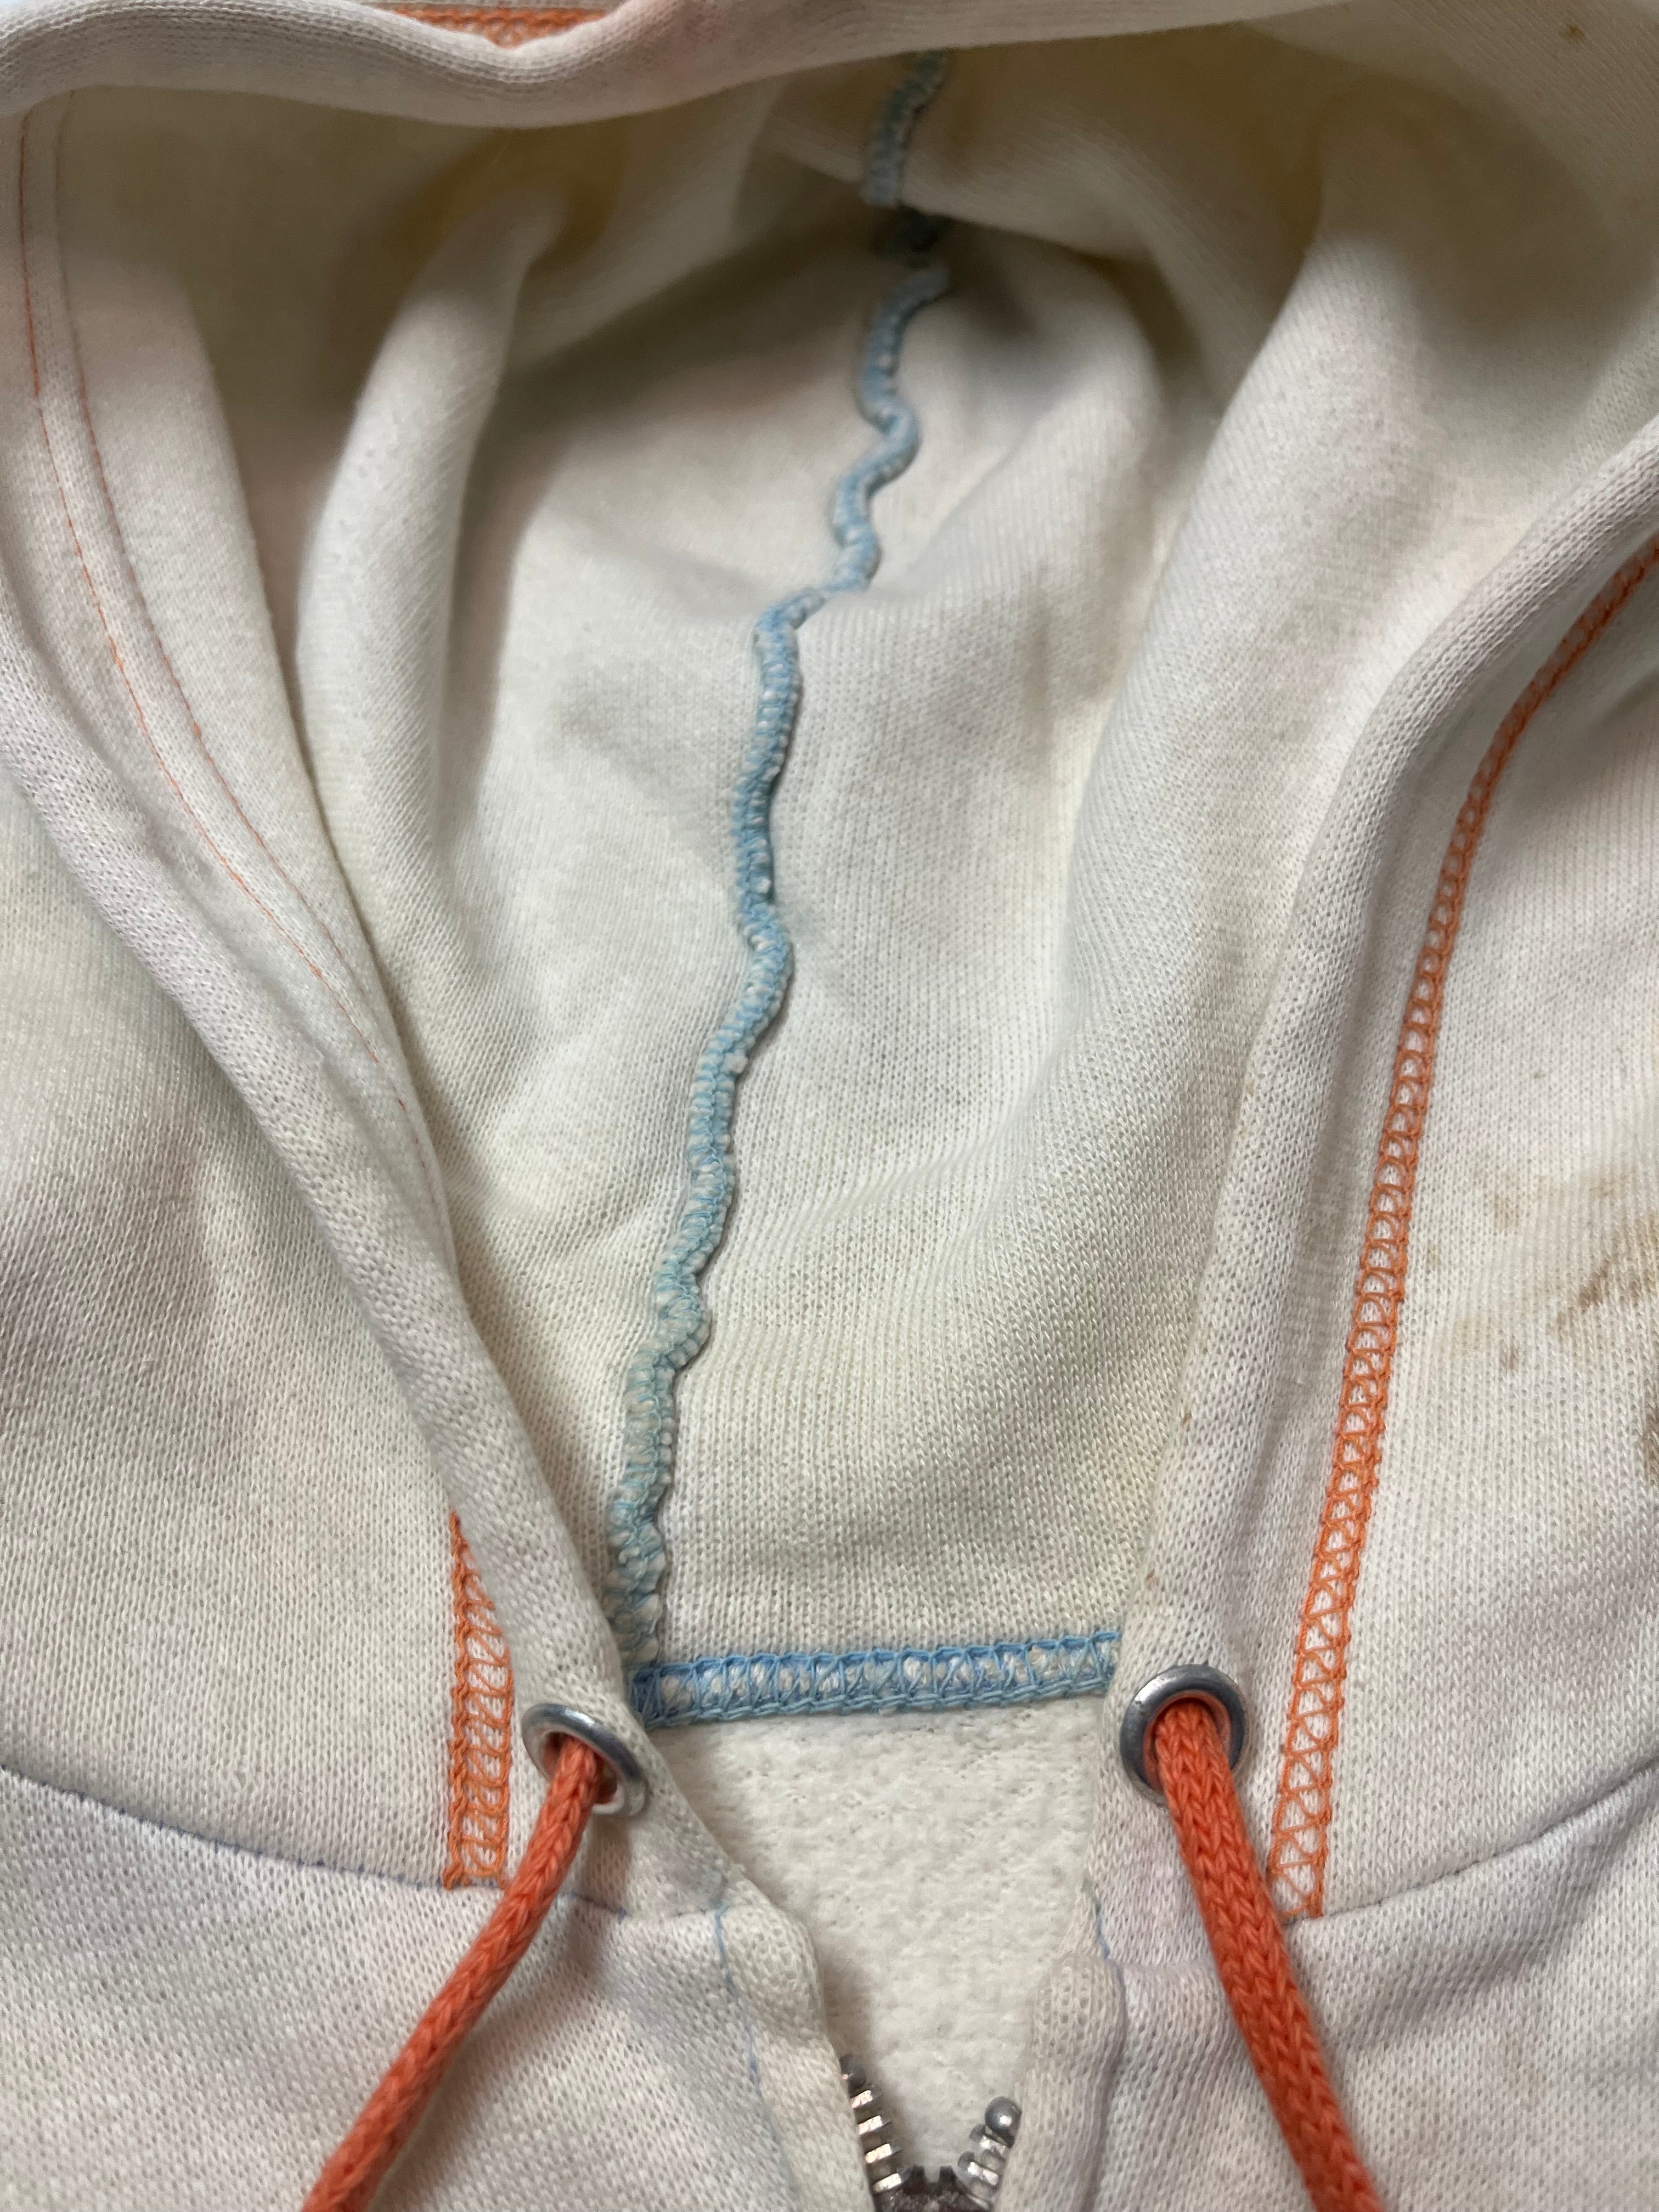 1960s Zip-Up Contrast Stitch Sweatshirt - Cream/Bleached/Orange/Blue - XS/S